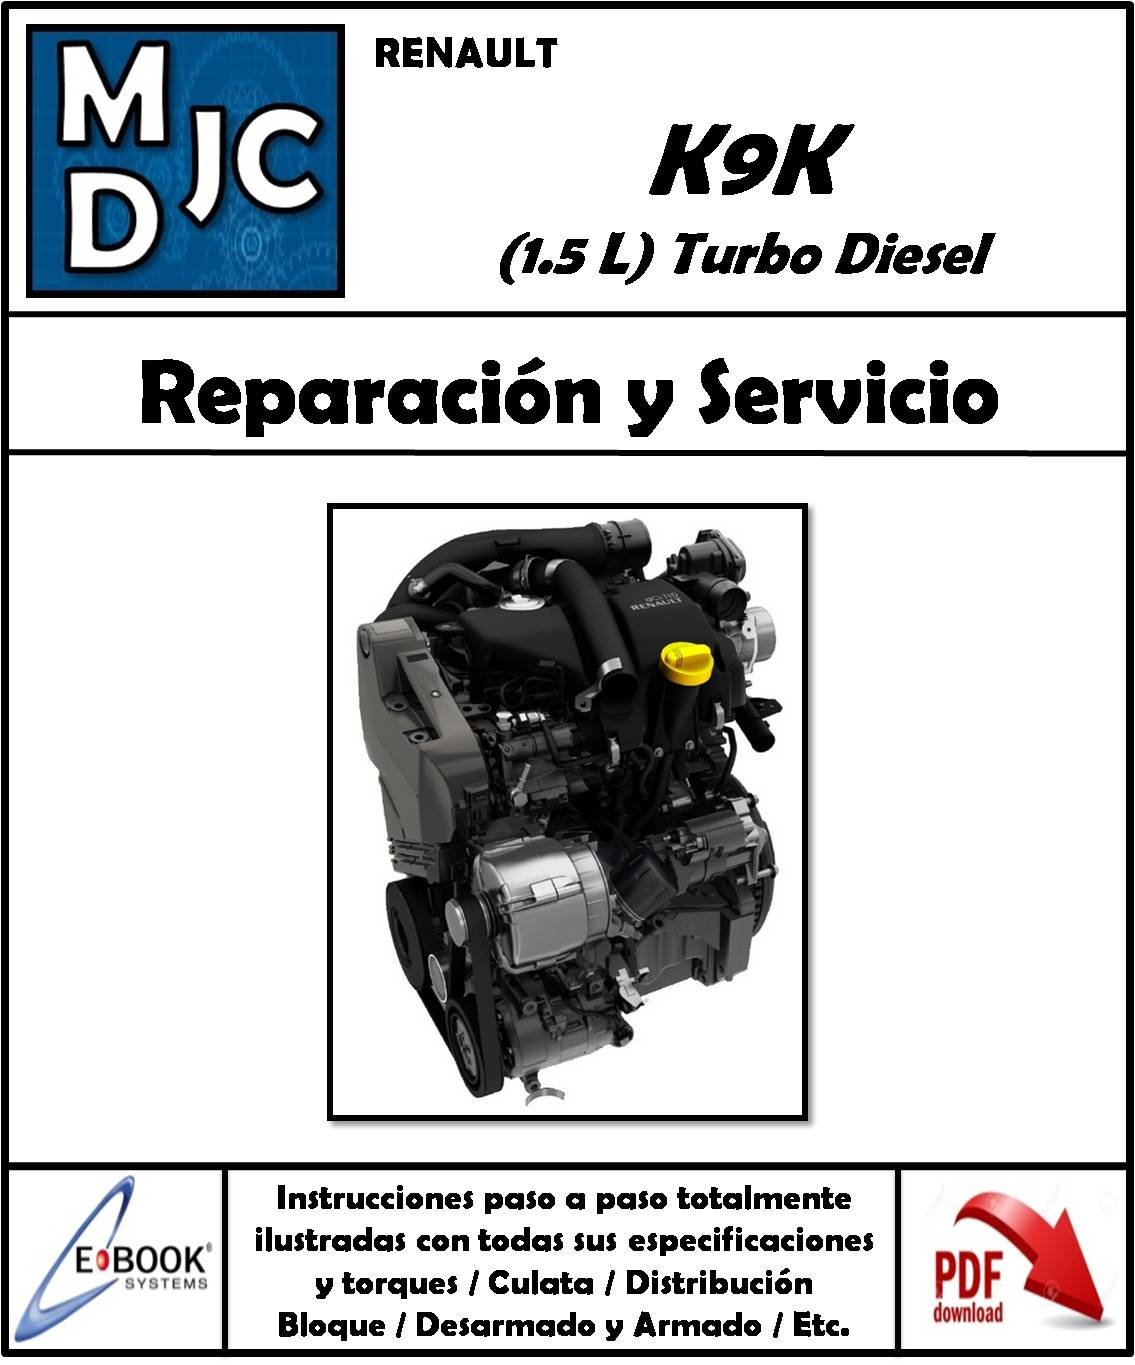 Renault  K9K  Motor 1.5 L Turbo Diesel